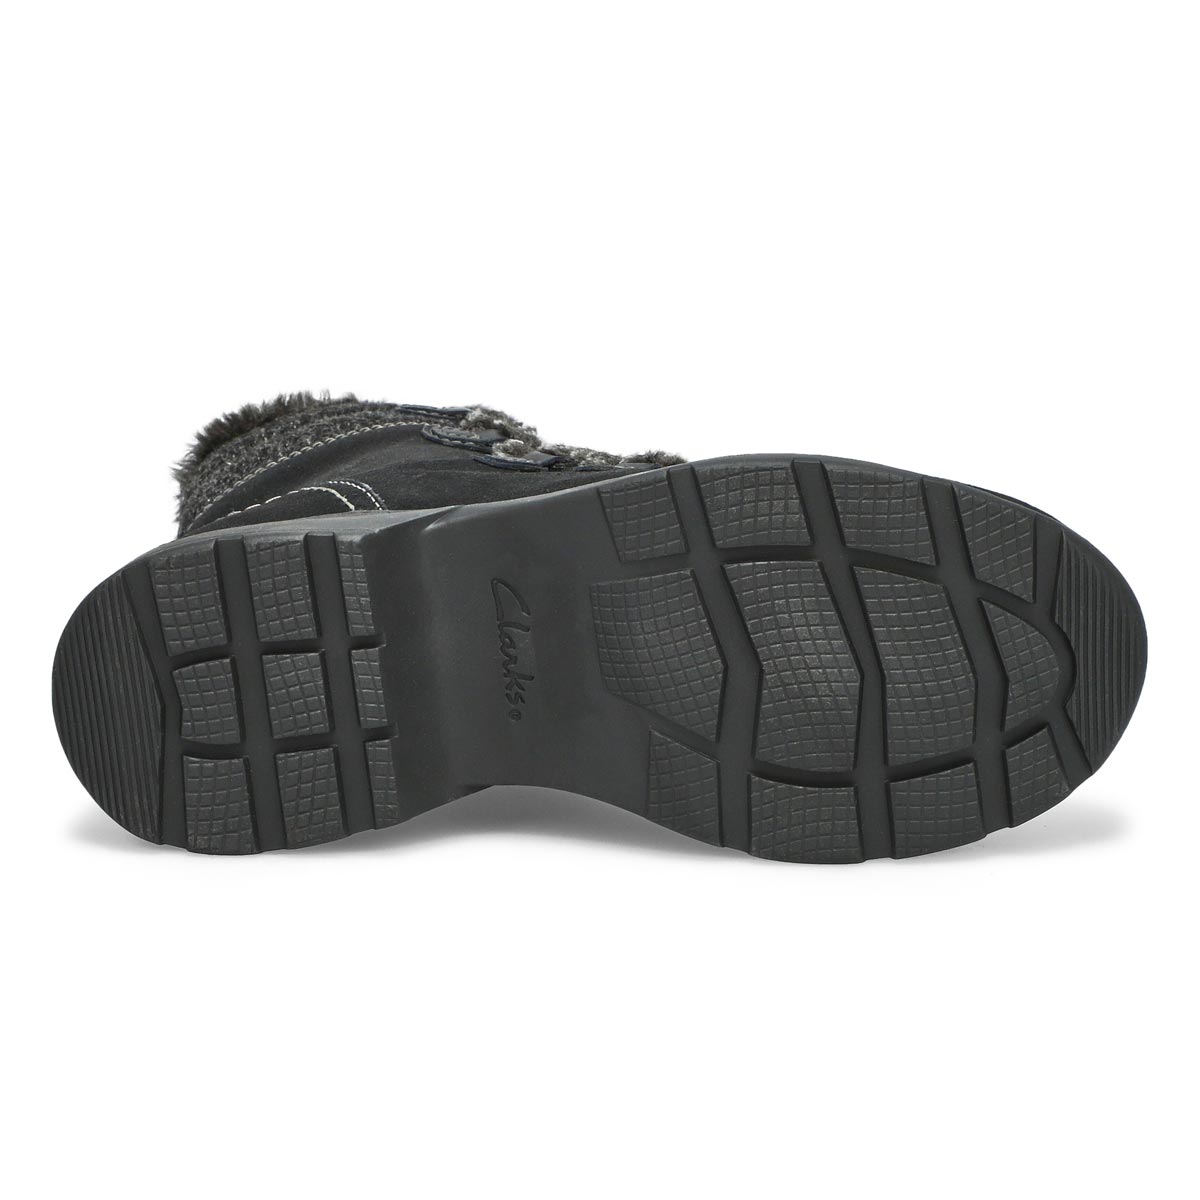 Women's Aveleigh Zip Waterproof Wide Boot - Black